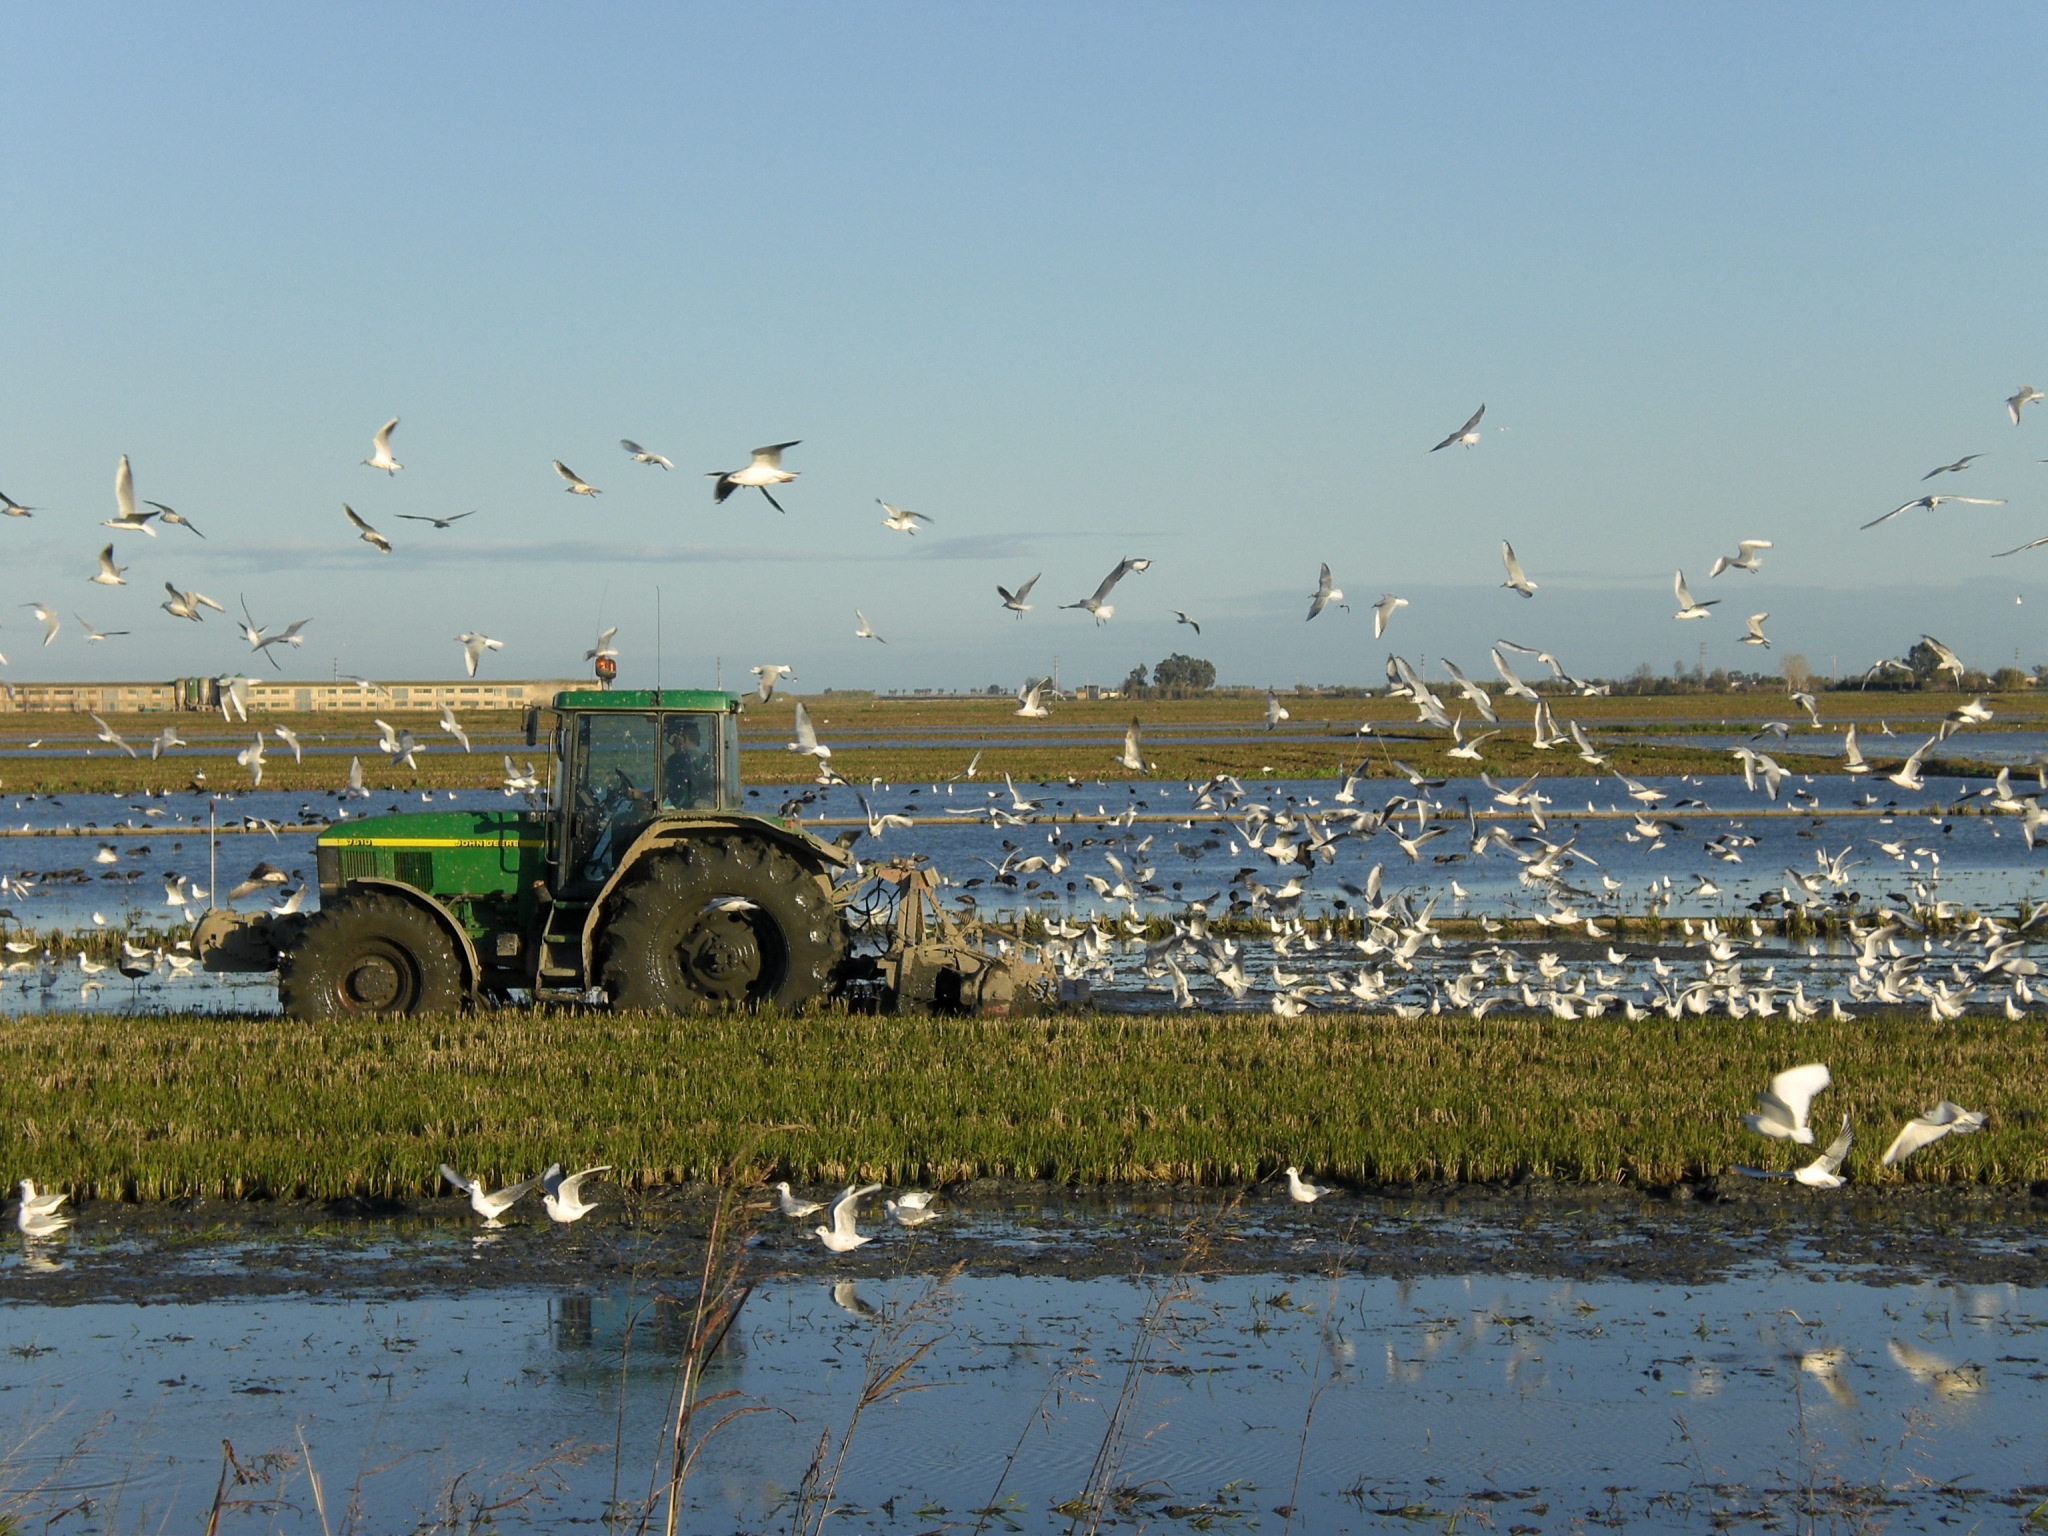 Der Traktor fährt durch das Reisfeld, während die Vögel über ihm fliegen